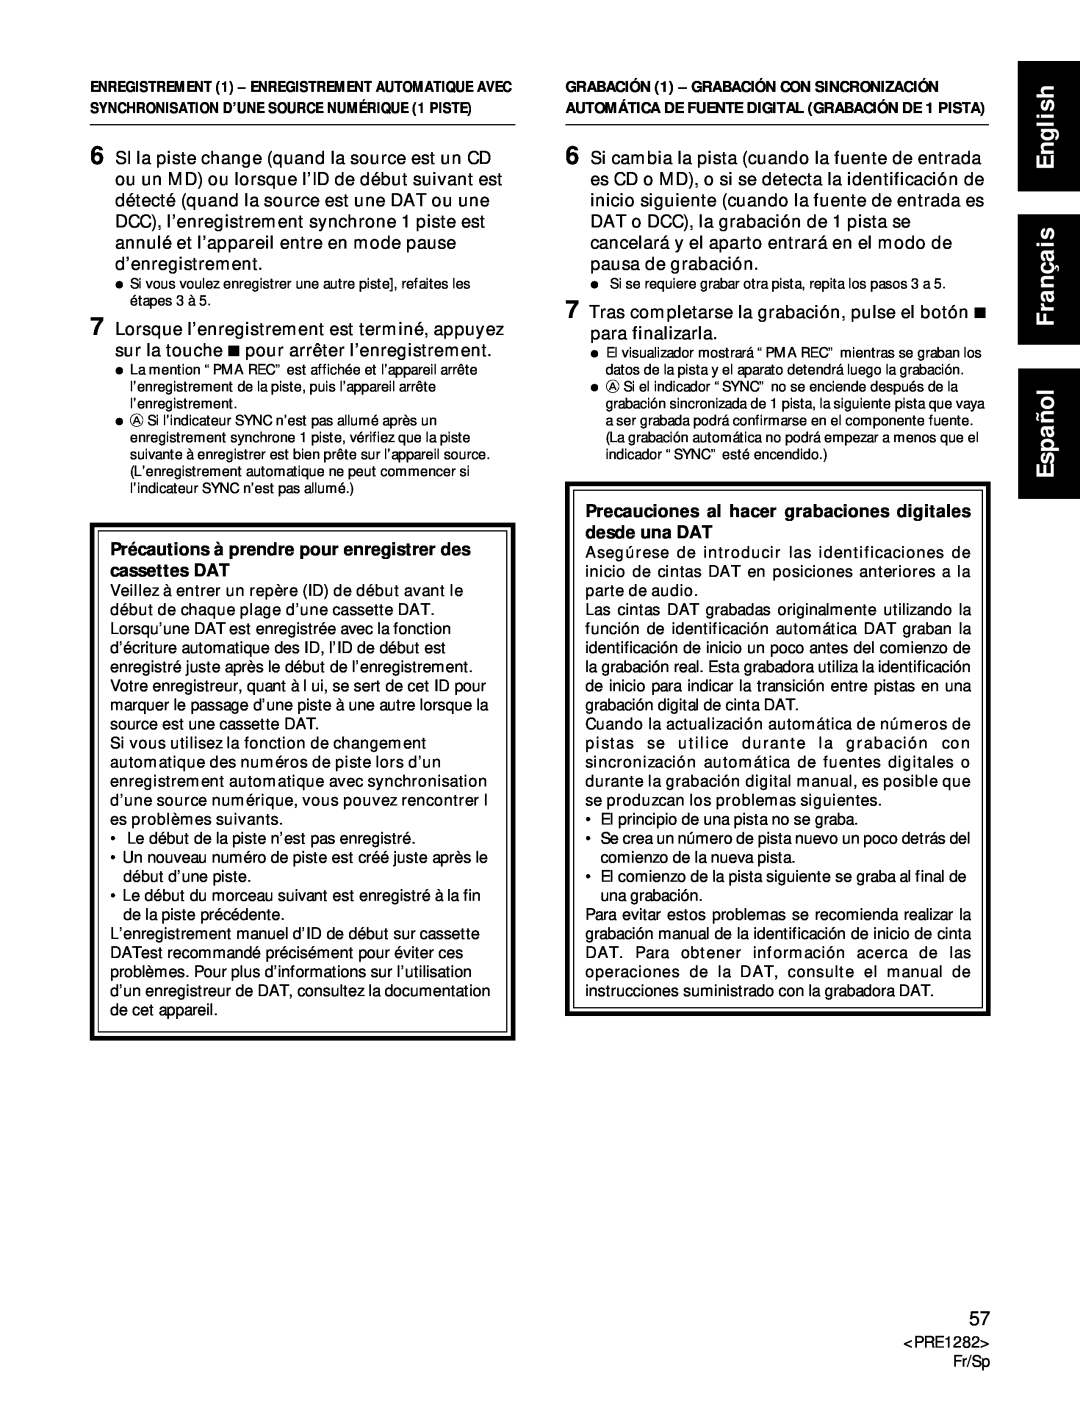 Americana Appliances CDR-850 manual Español Français English, Le début de la piste n’est pas enregistré 